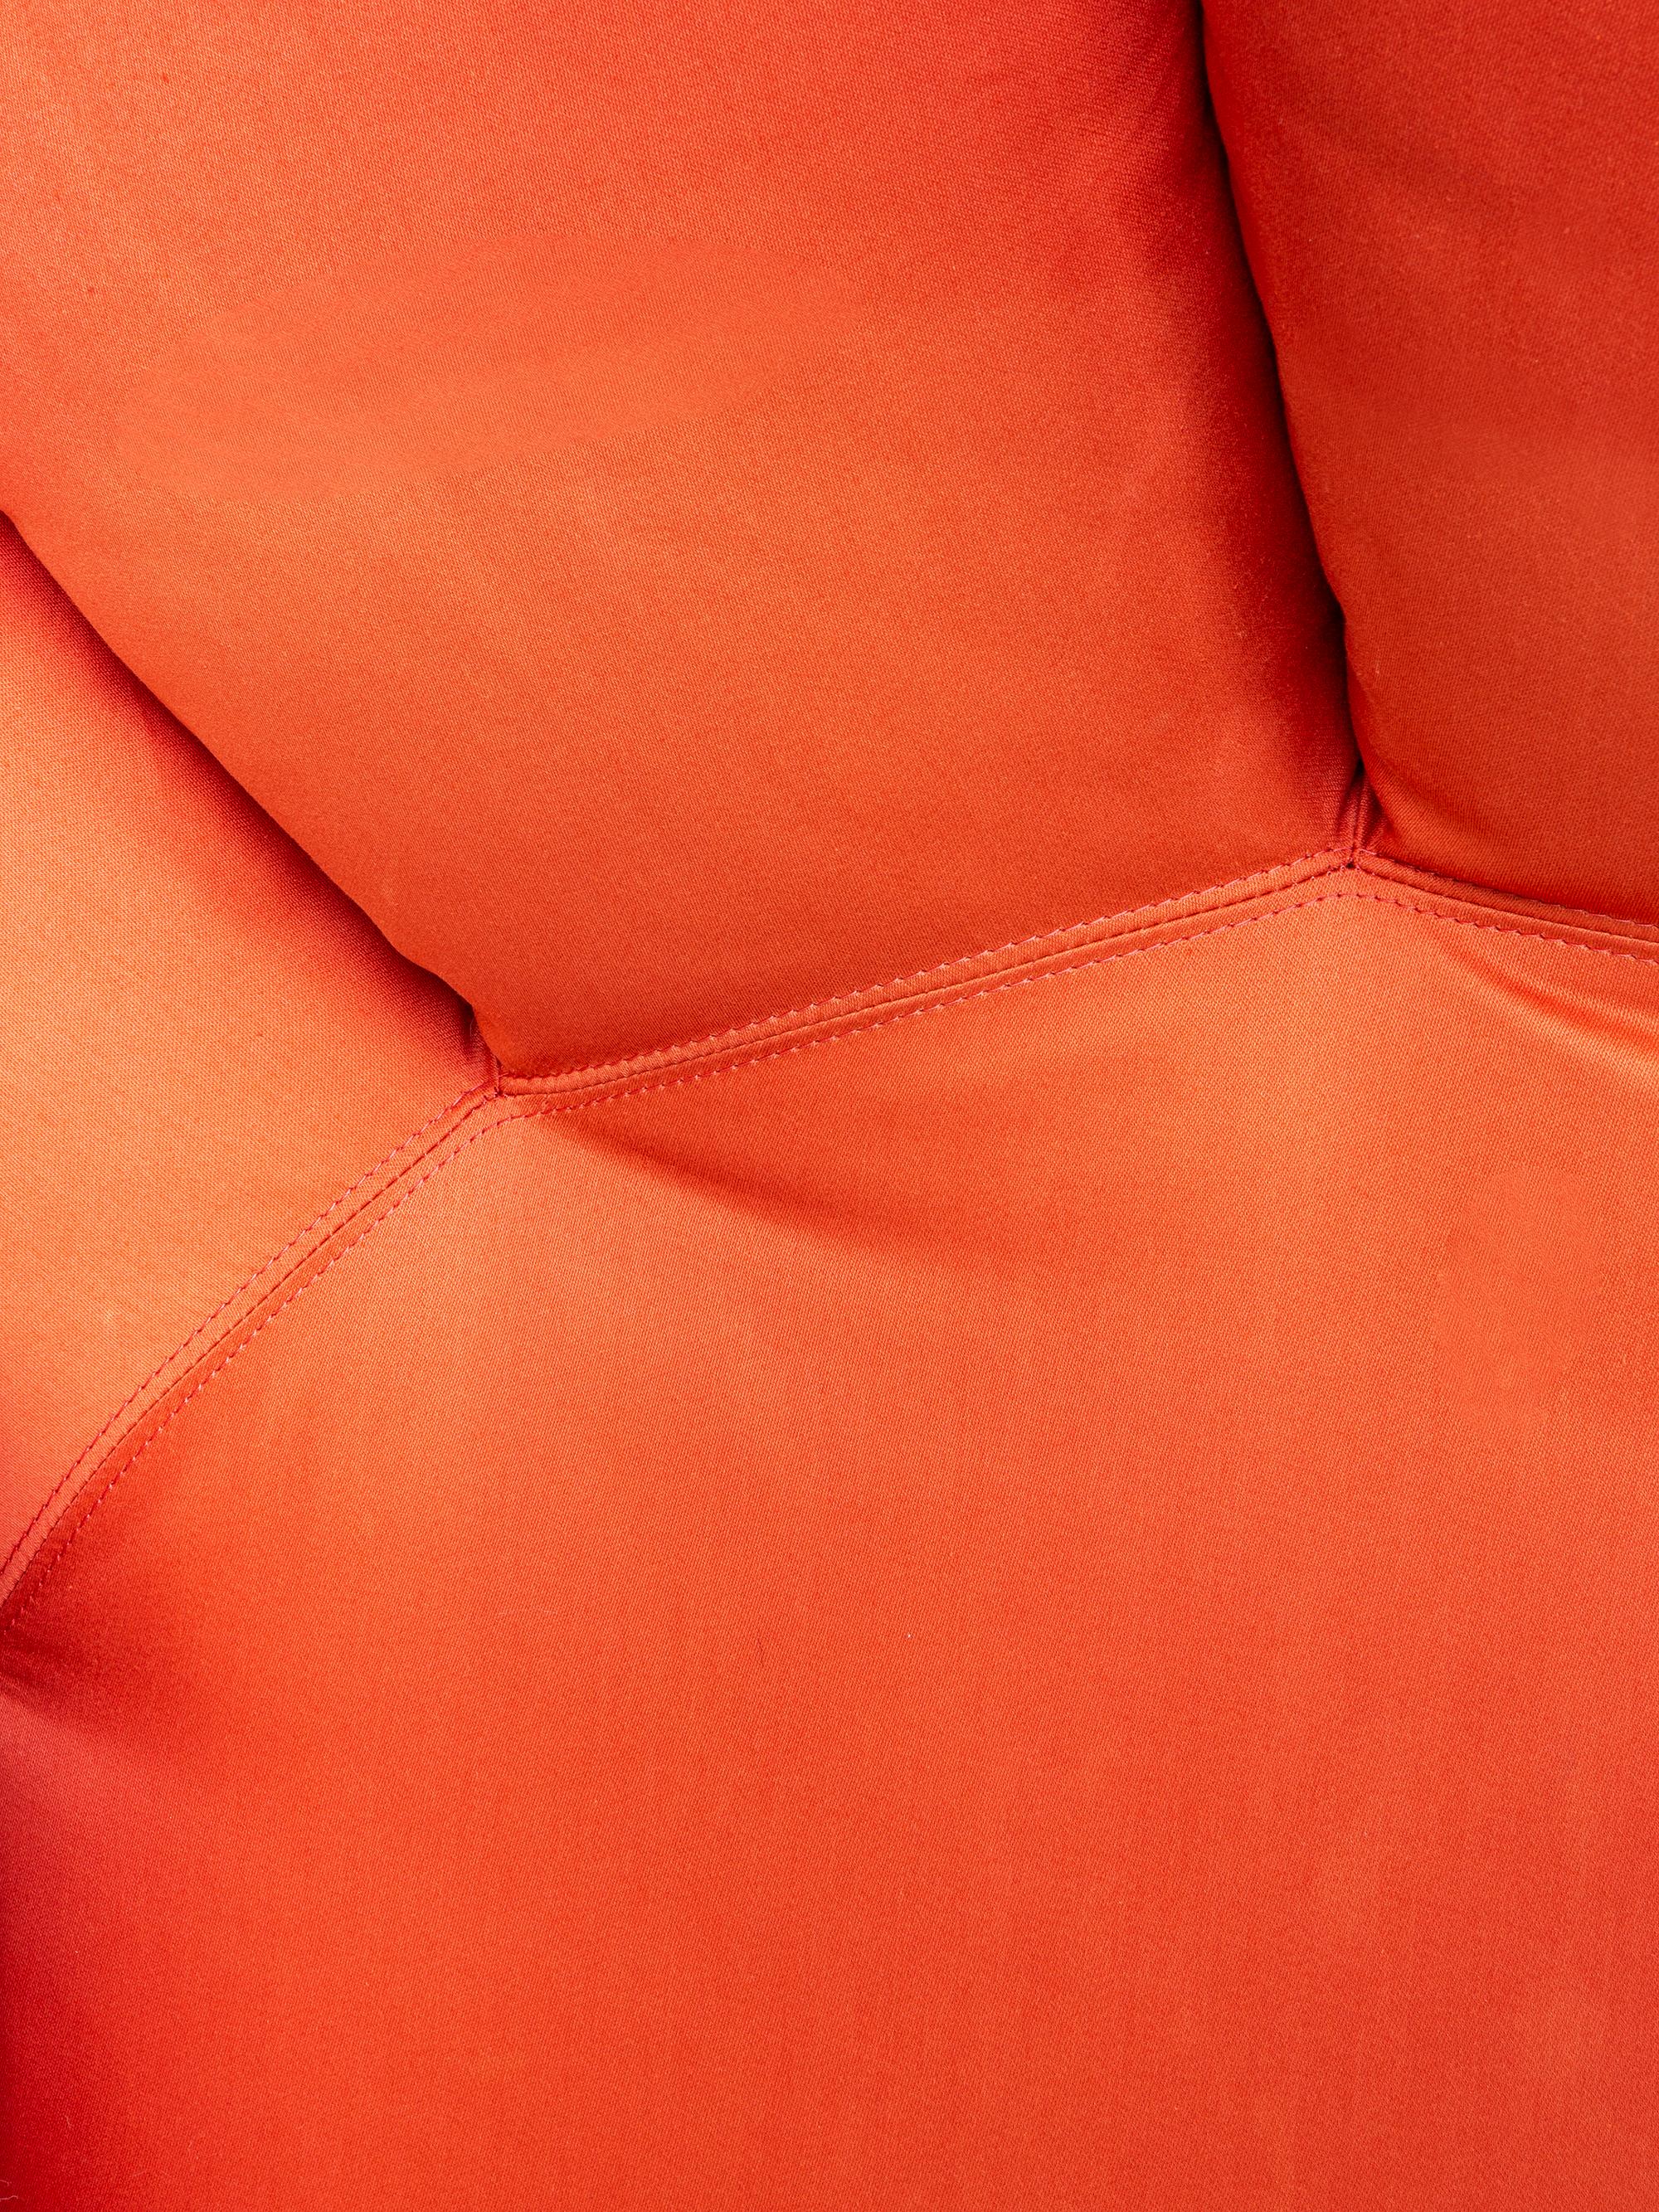 Fabric Tramonto a New York Modular Sofa Designed by Gaetano Pesce for Cassina, 1984